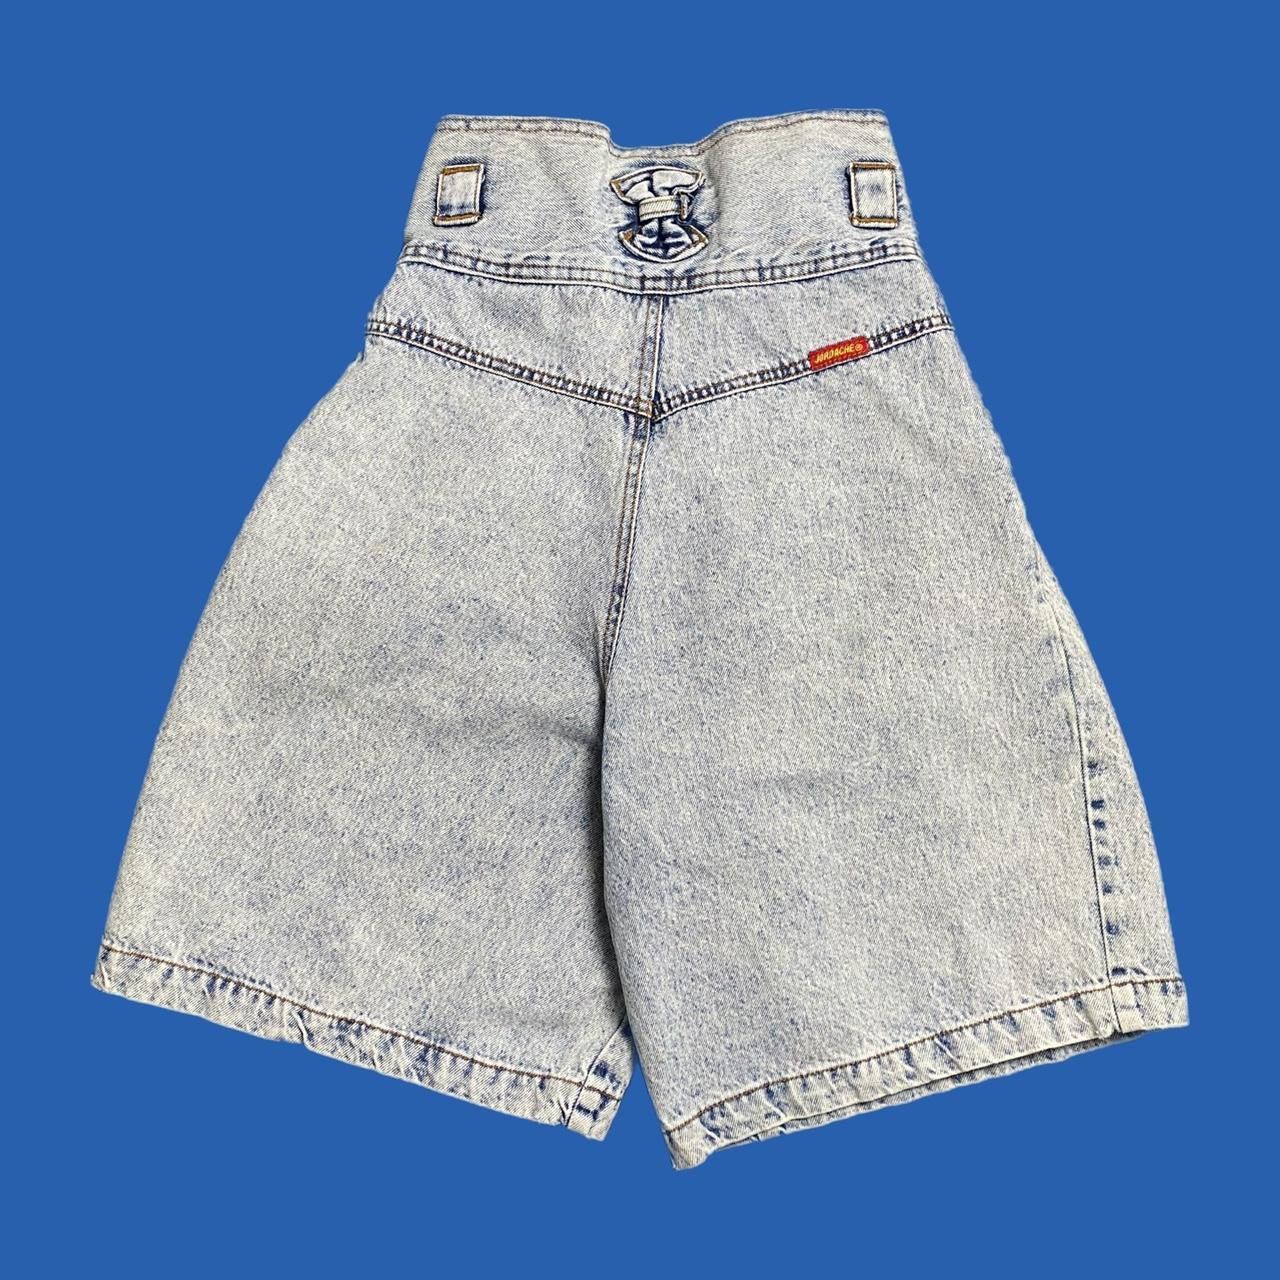 Vintage vintage jordache denim shorts Size US 26 / EU 42 - 2 Preview